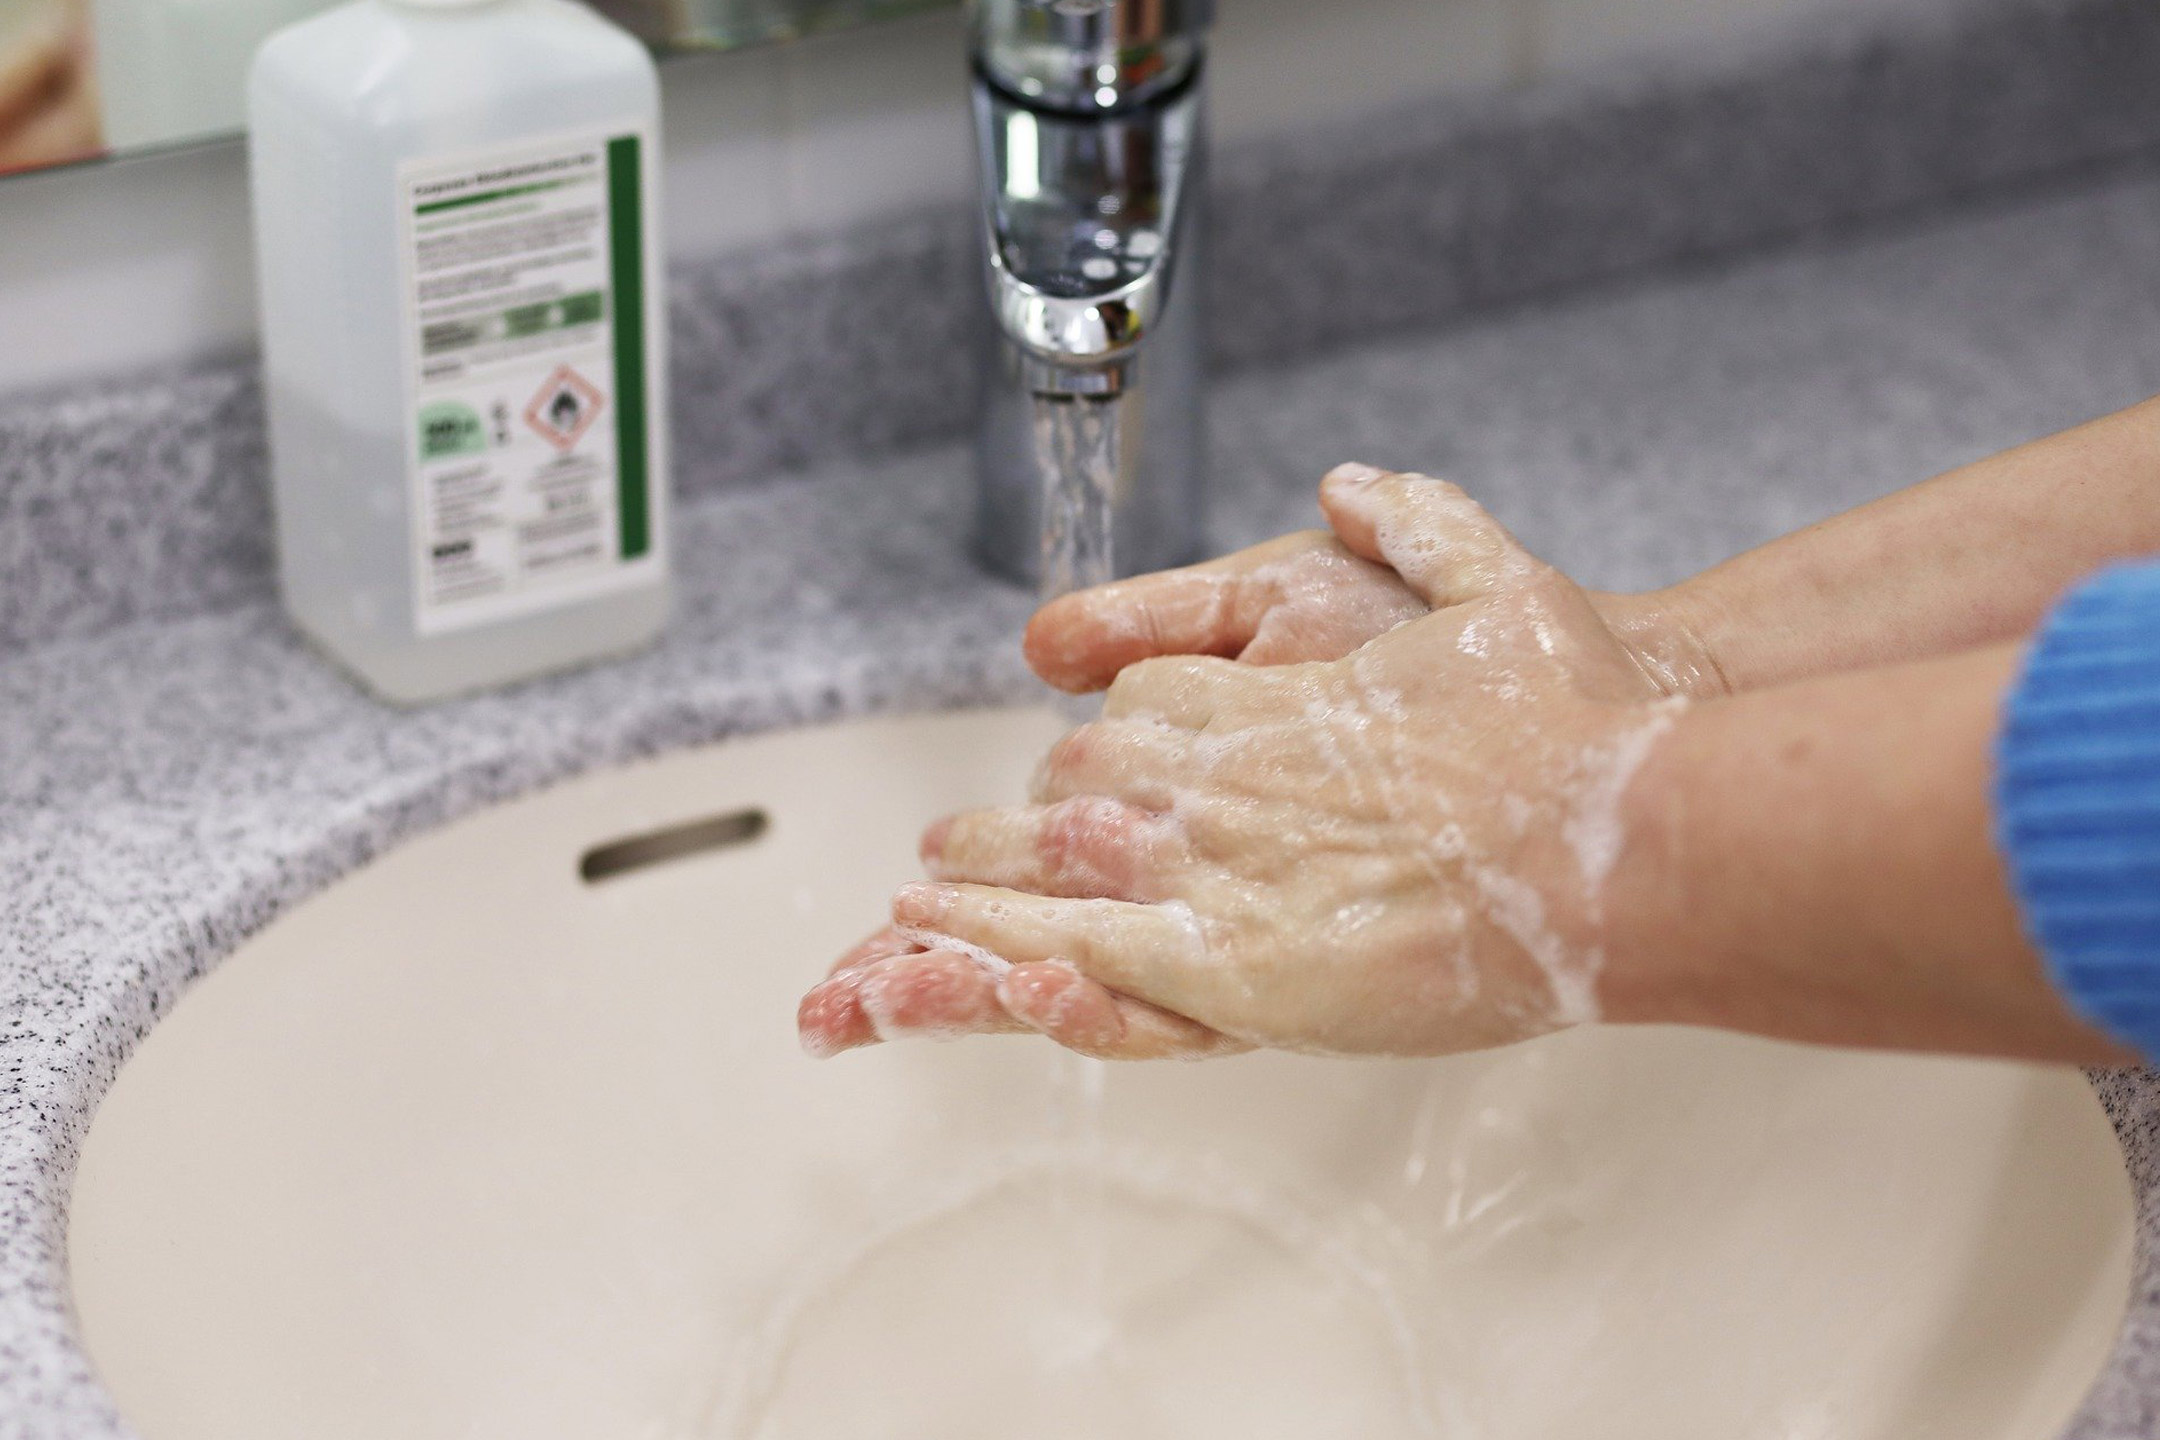 handwashing-2160